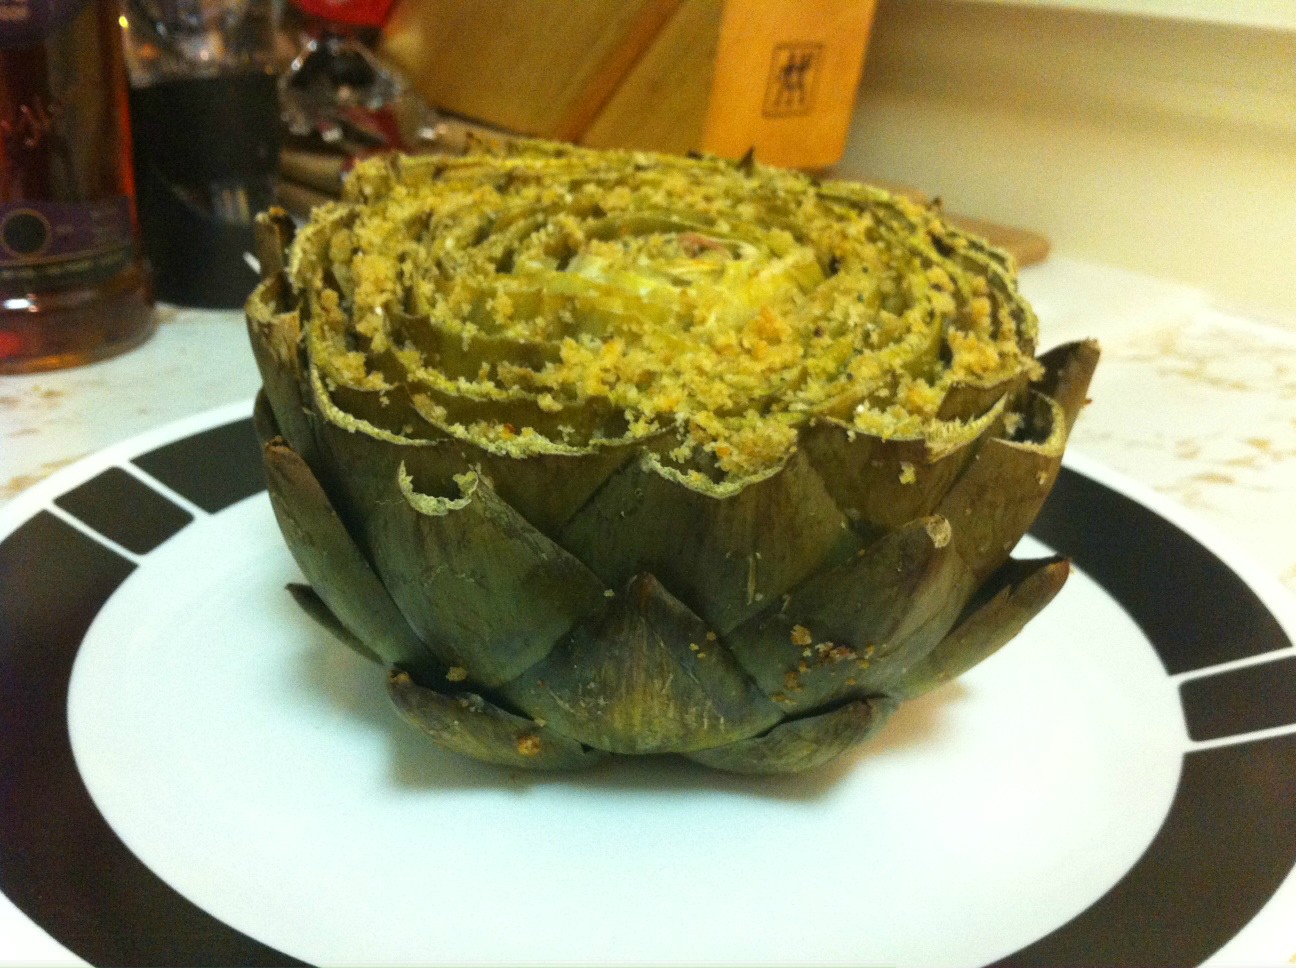 Plated stuffed artichoke